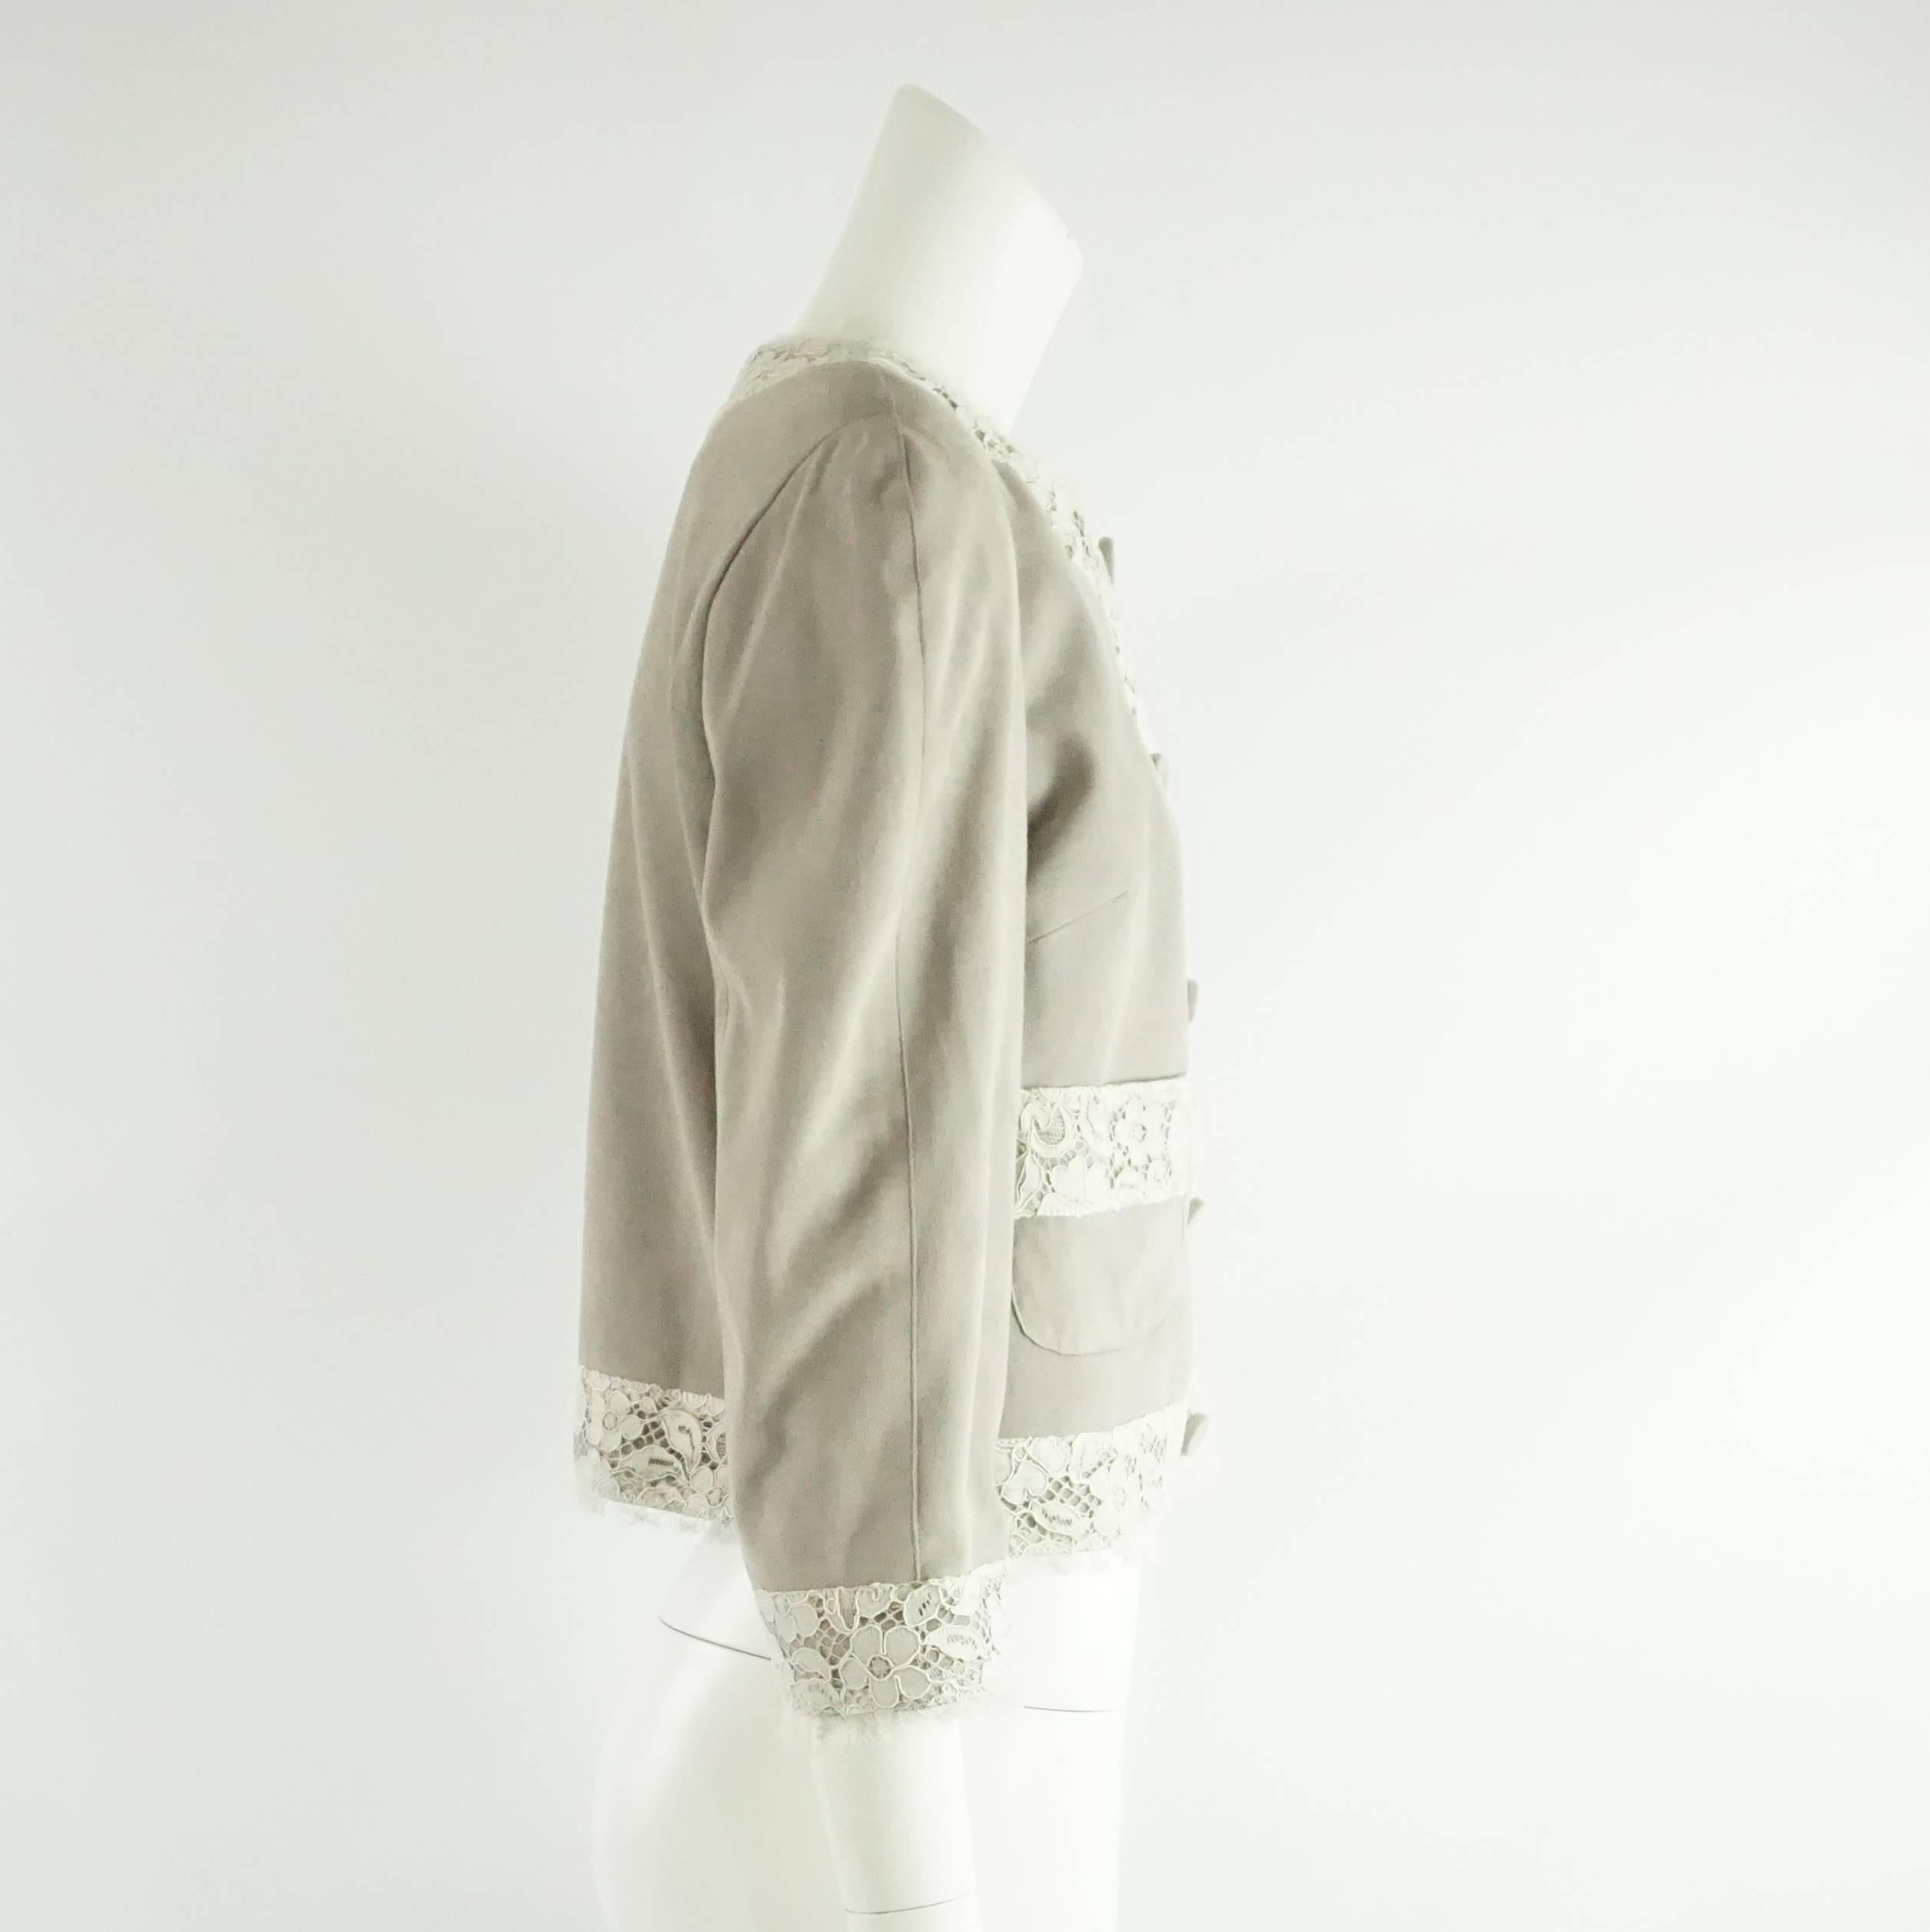 Cette veste Dolce & Gabbana est en daim gris et ornée de dentelle ivoire. La veste est doublée d'un tissu à pois en soie noir et blanc et comporte une manche 3/4. Il y a deux poches sur le devant et cinq grands boutons à pression recouverts de daim.